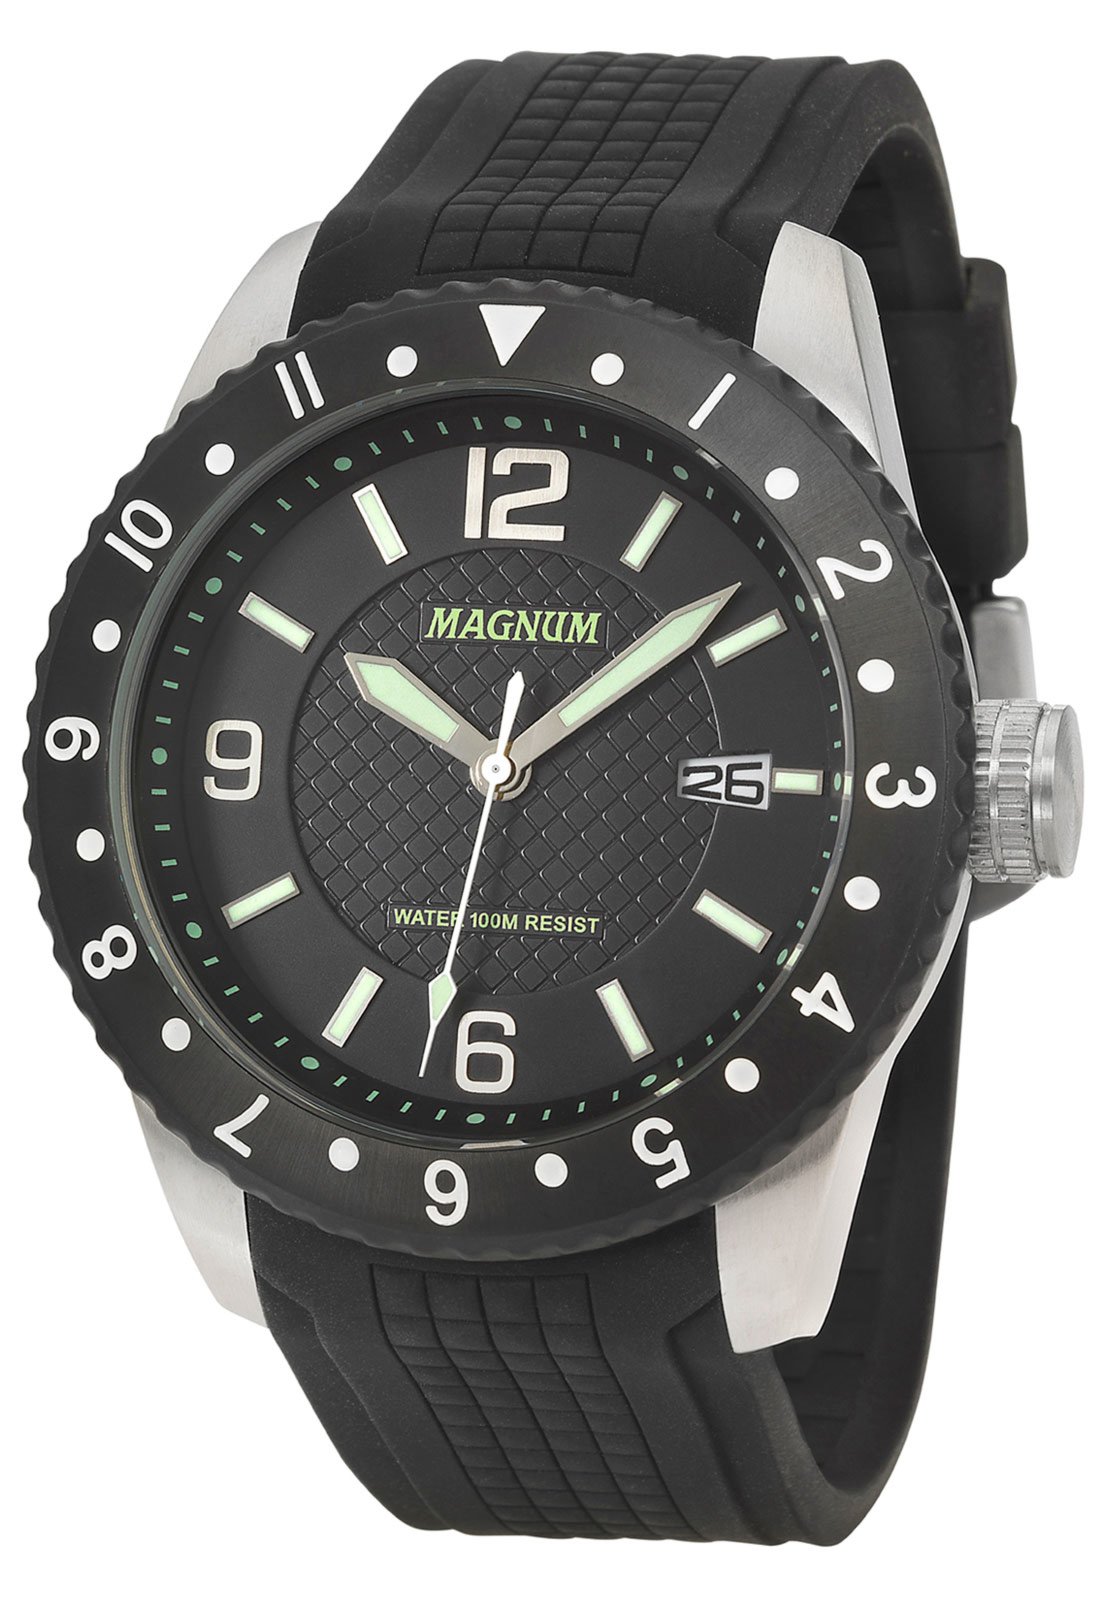 Relógio Magnum Masculino Original 100m